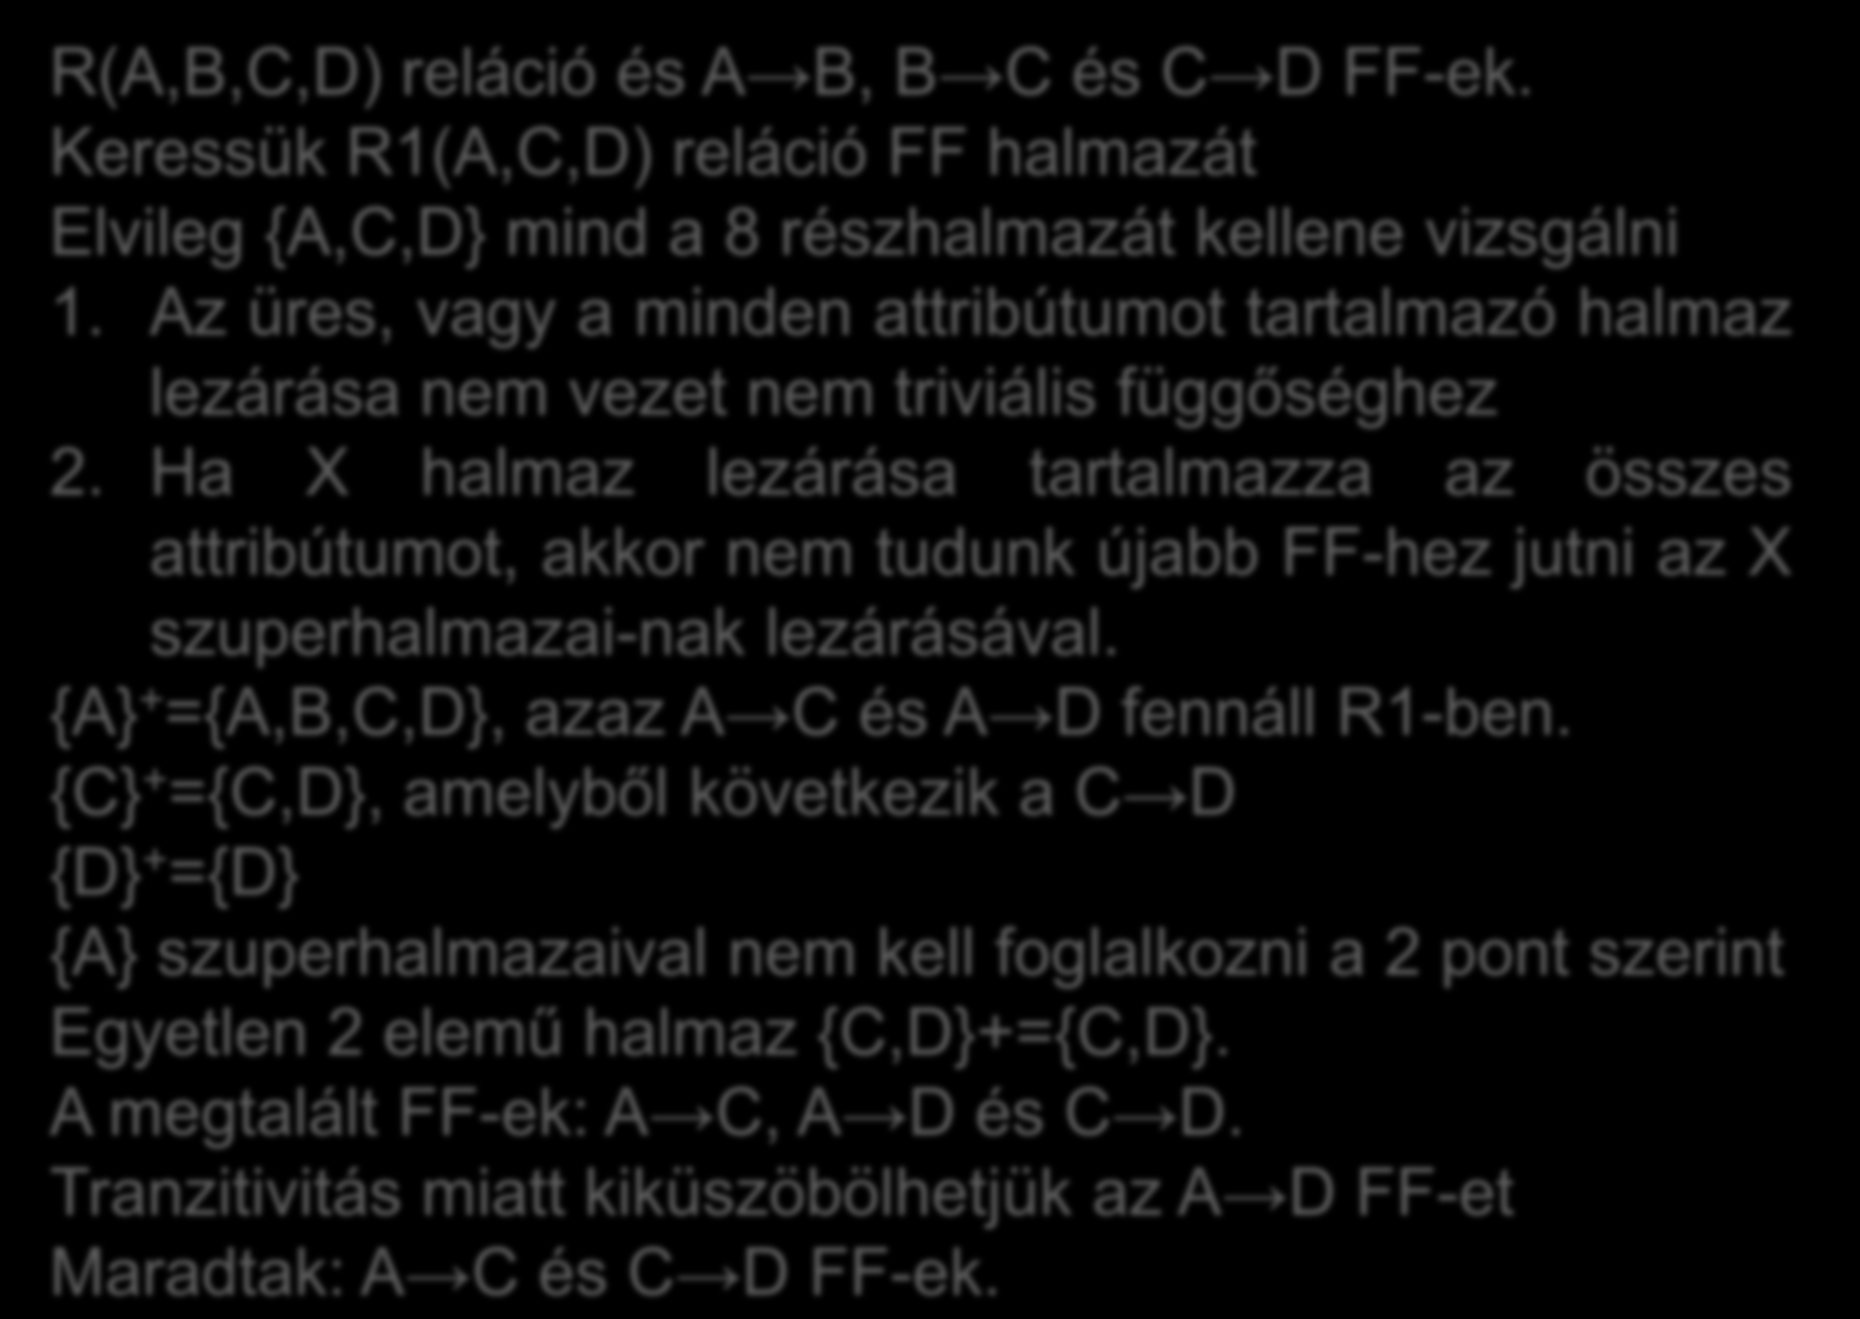 R(A,B,C,D) reláció és A B, B C és C D FF-ek. Keressük R1(A,C,D) reláció FF halmazát Elvileg {A,C,D} mind a 8 részhalmazát kellene vizsgálni 1.